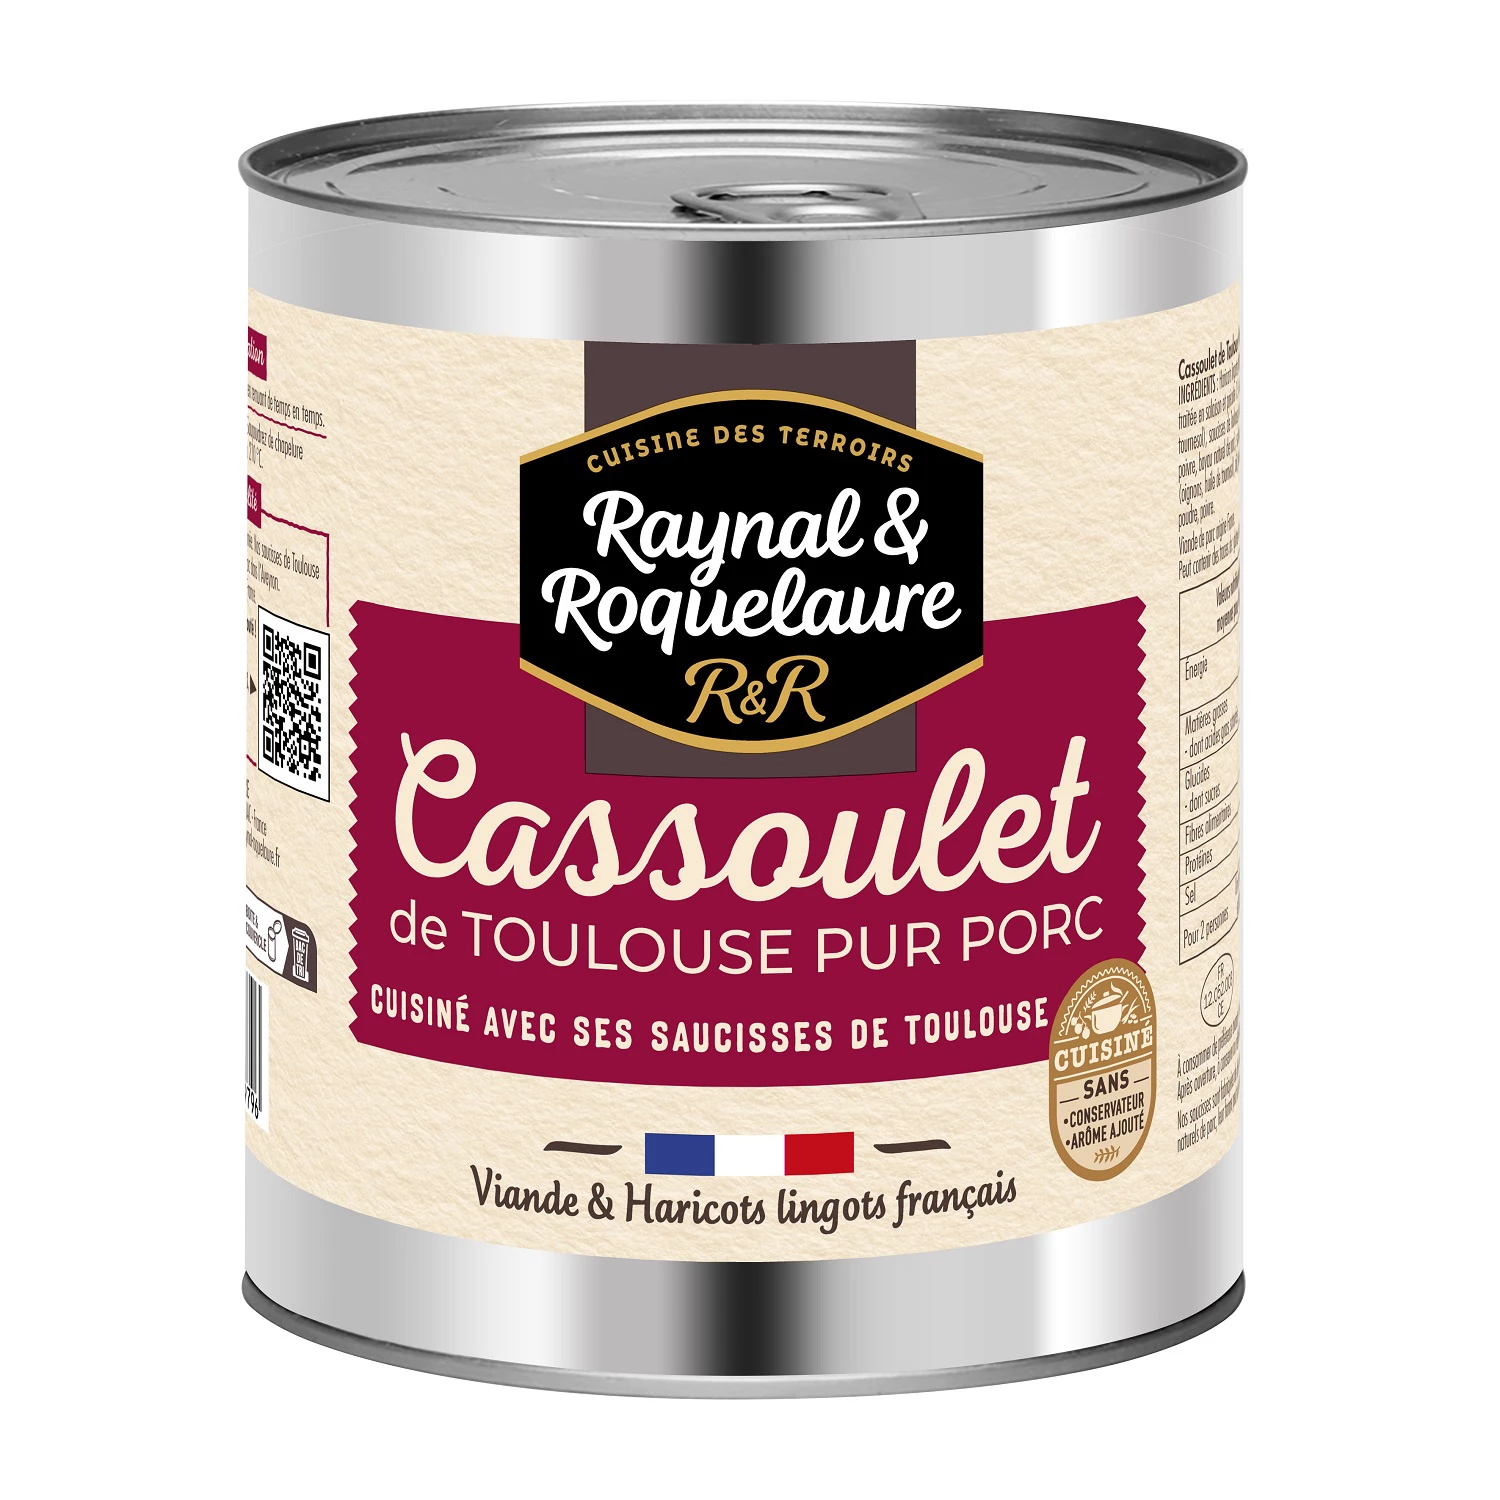 Cassoulet de Toulouse,  840g - RAYNAL & ROQUELAURE